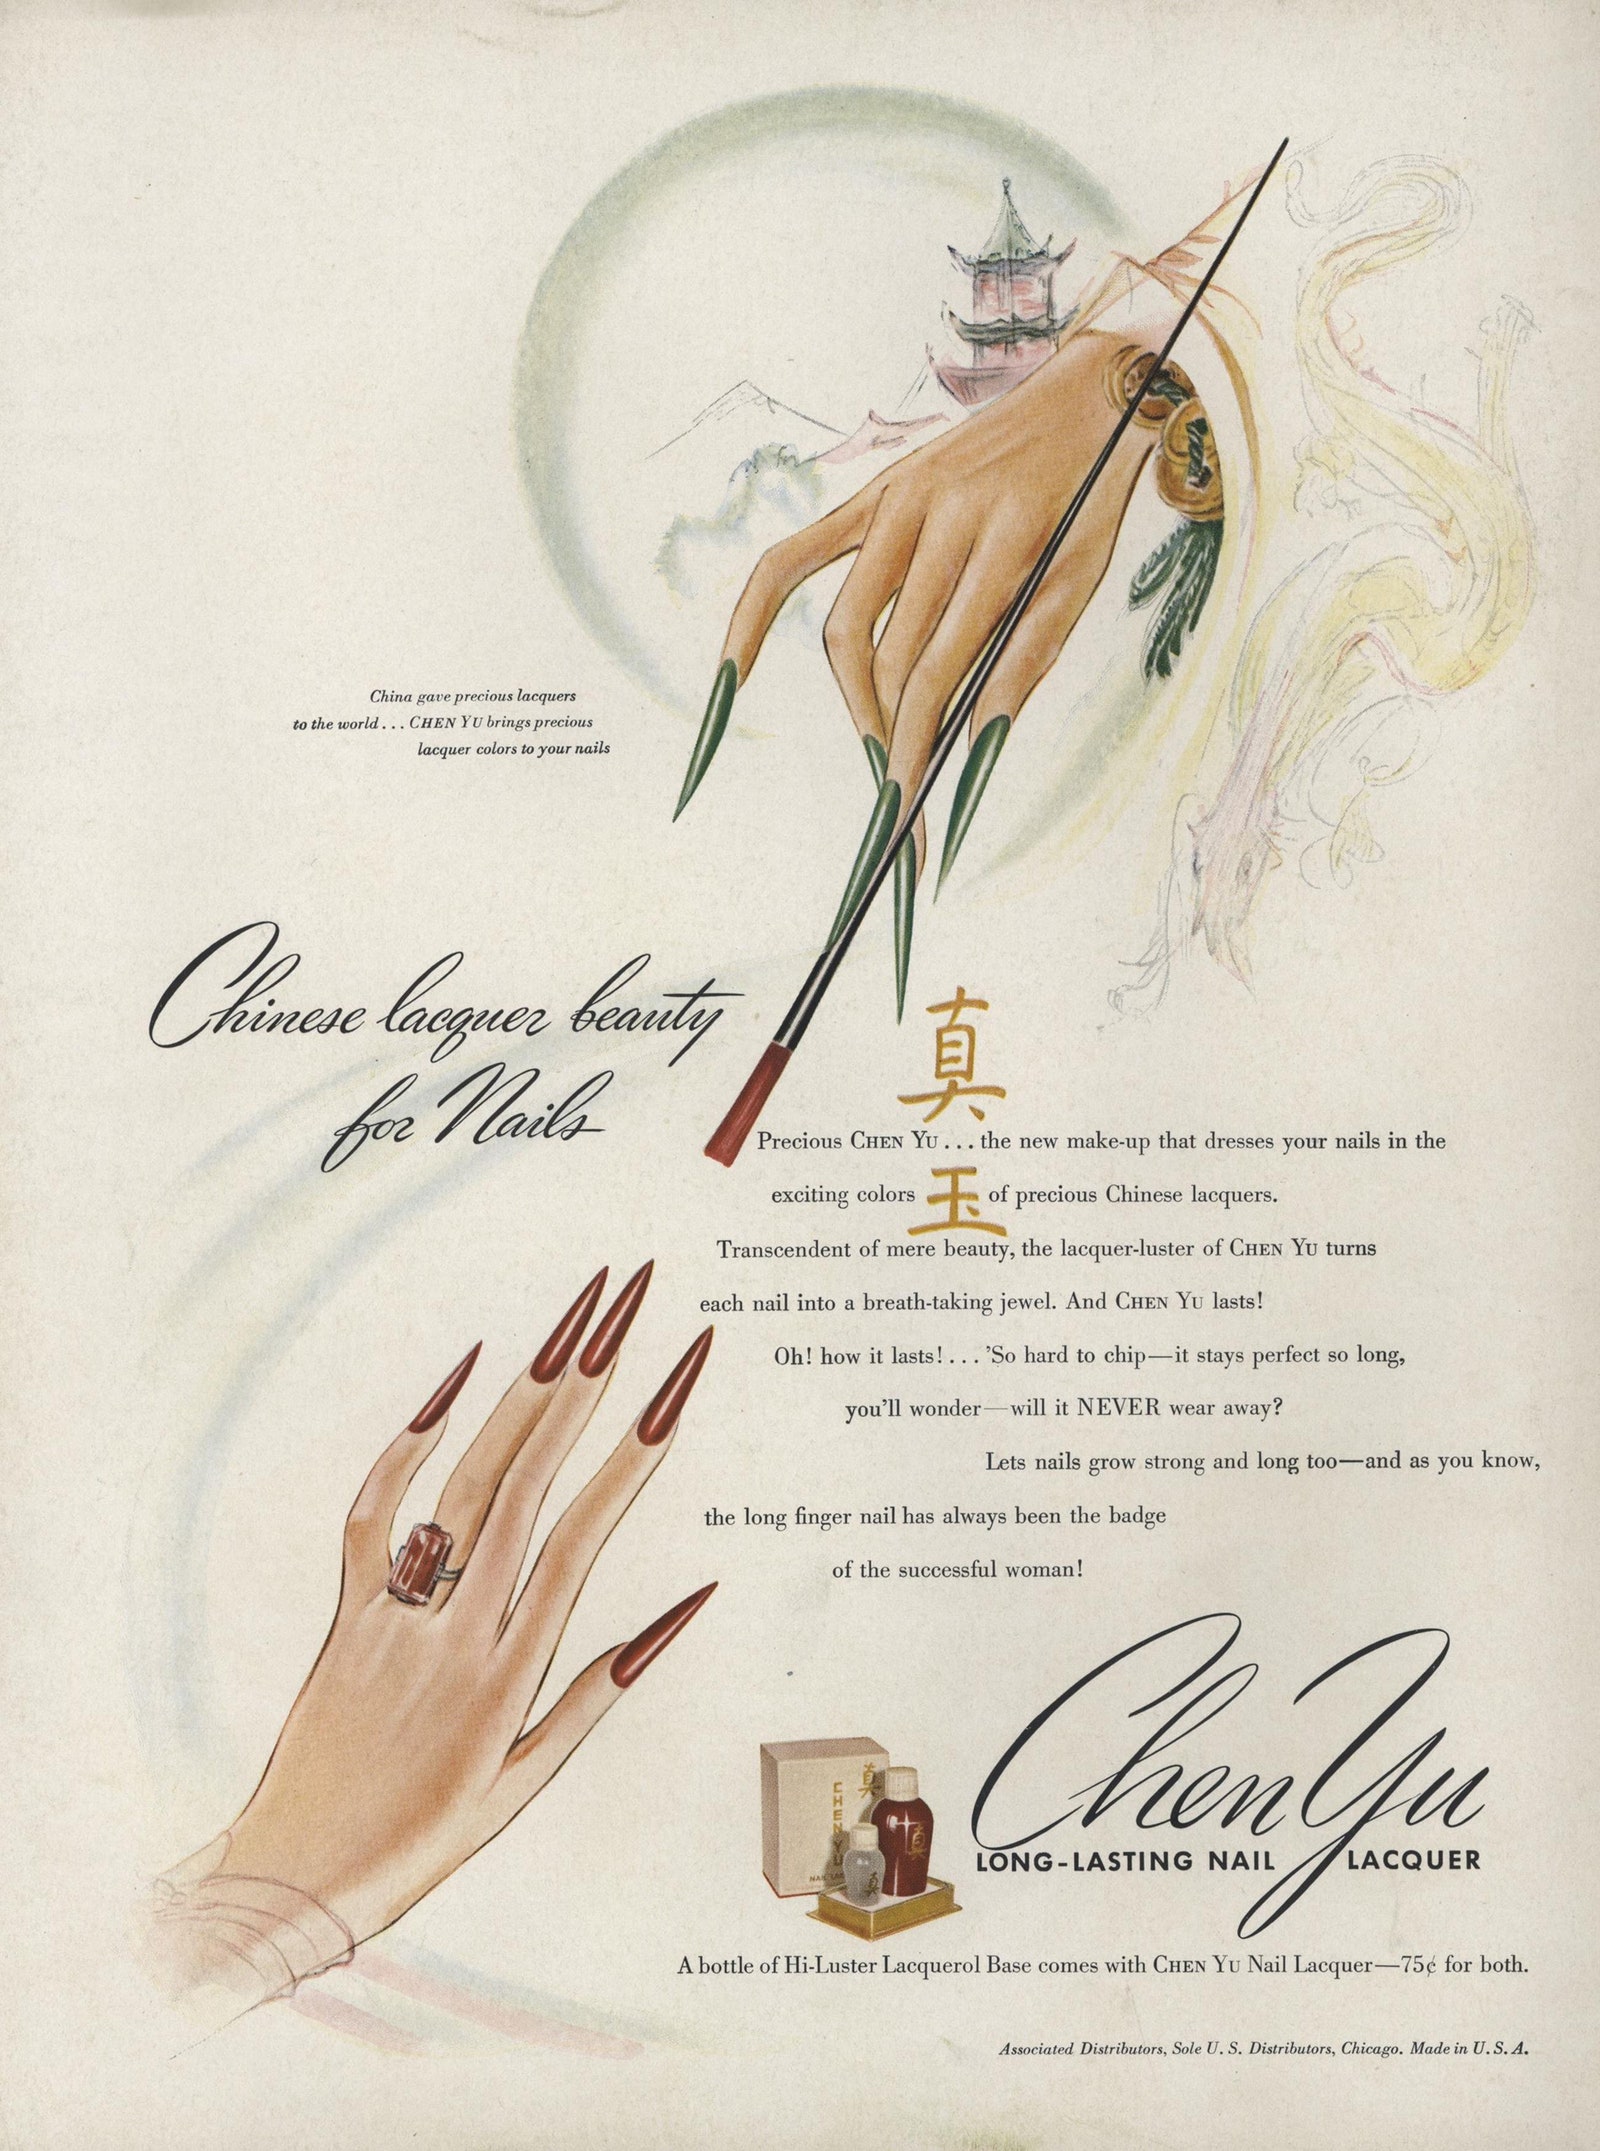 Реклама лака Chen Yu в Vogue январь 1942